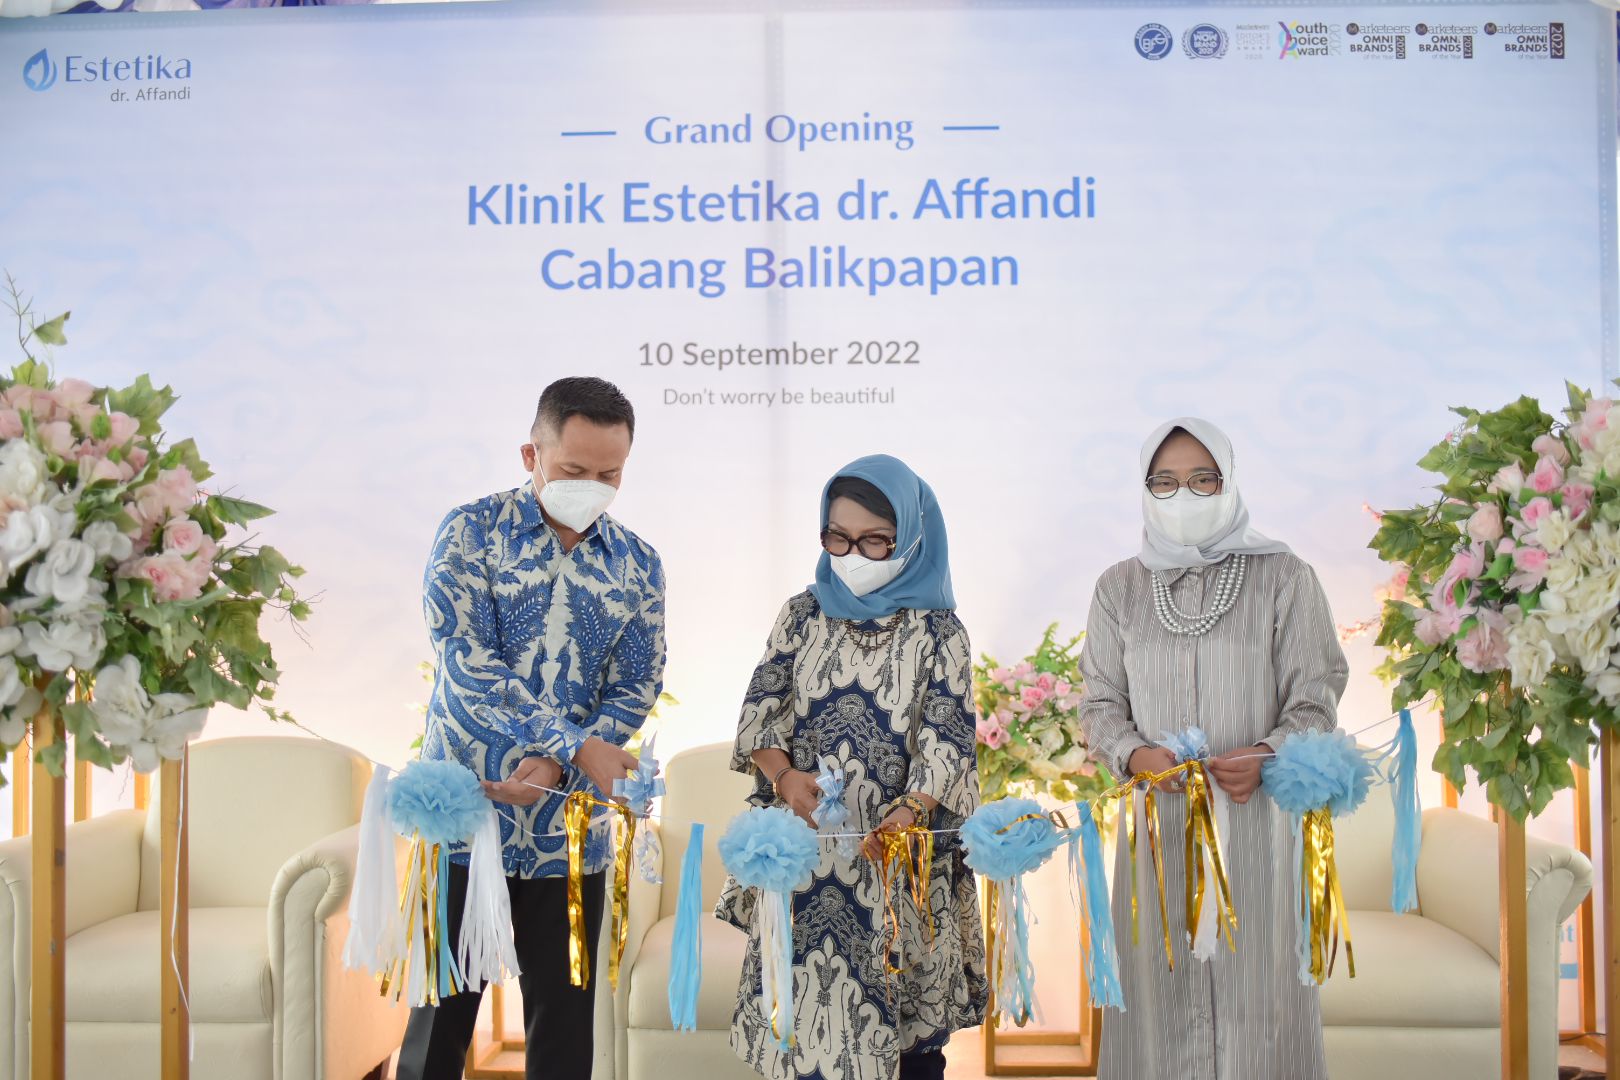 Grand Opening Klinik Estetika dr. Affandi